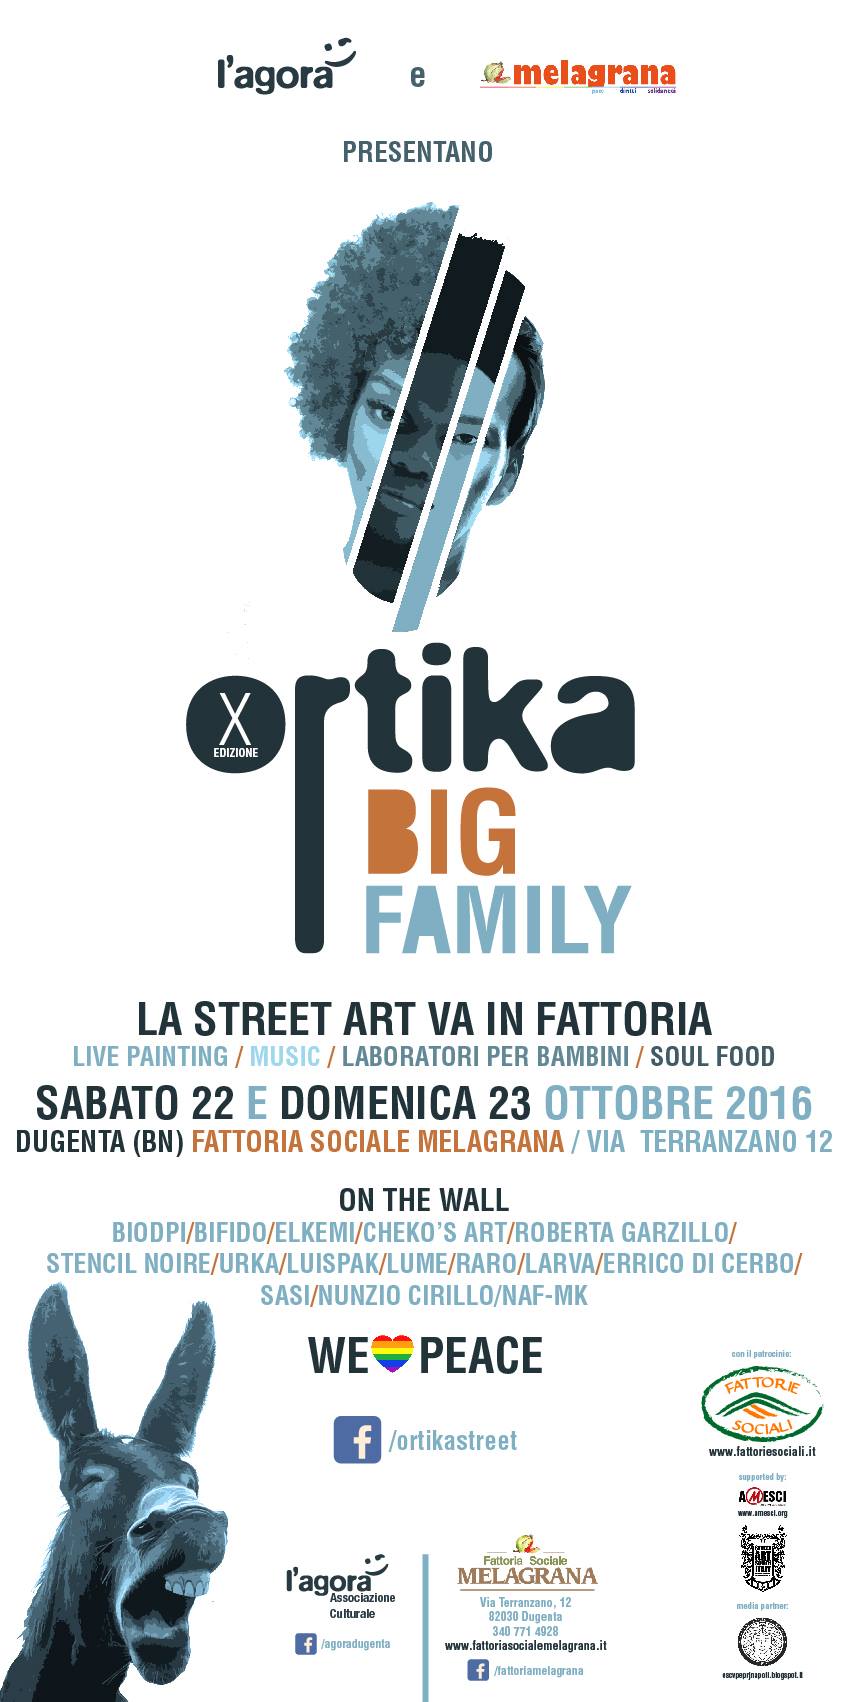 Ortika Big Family | La street art va in fattoria